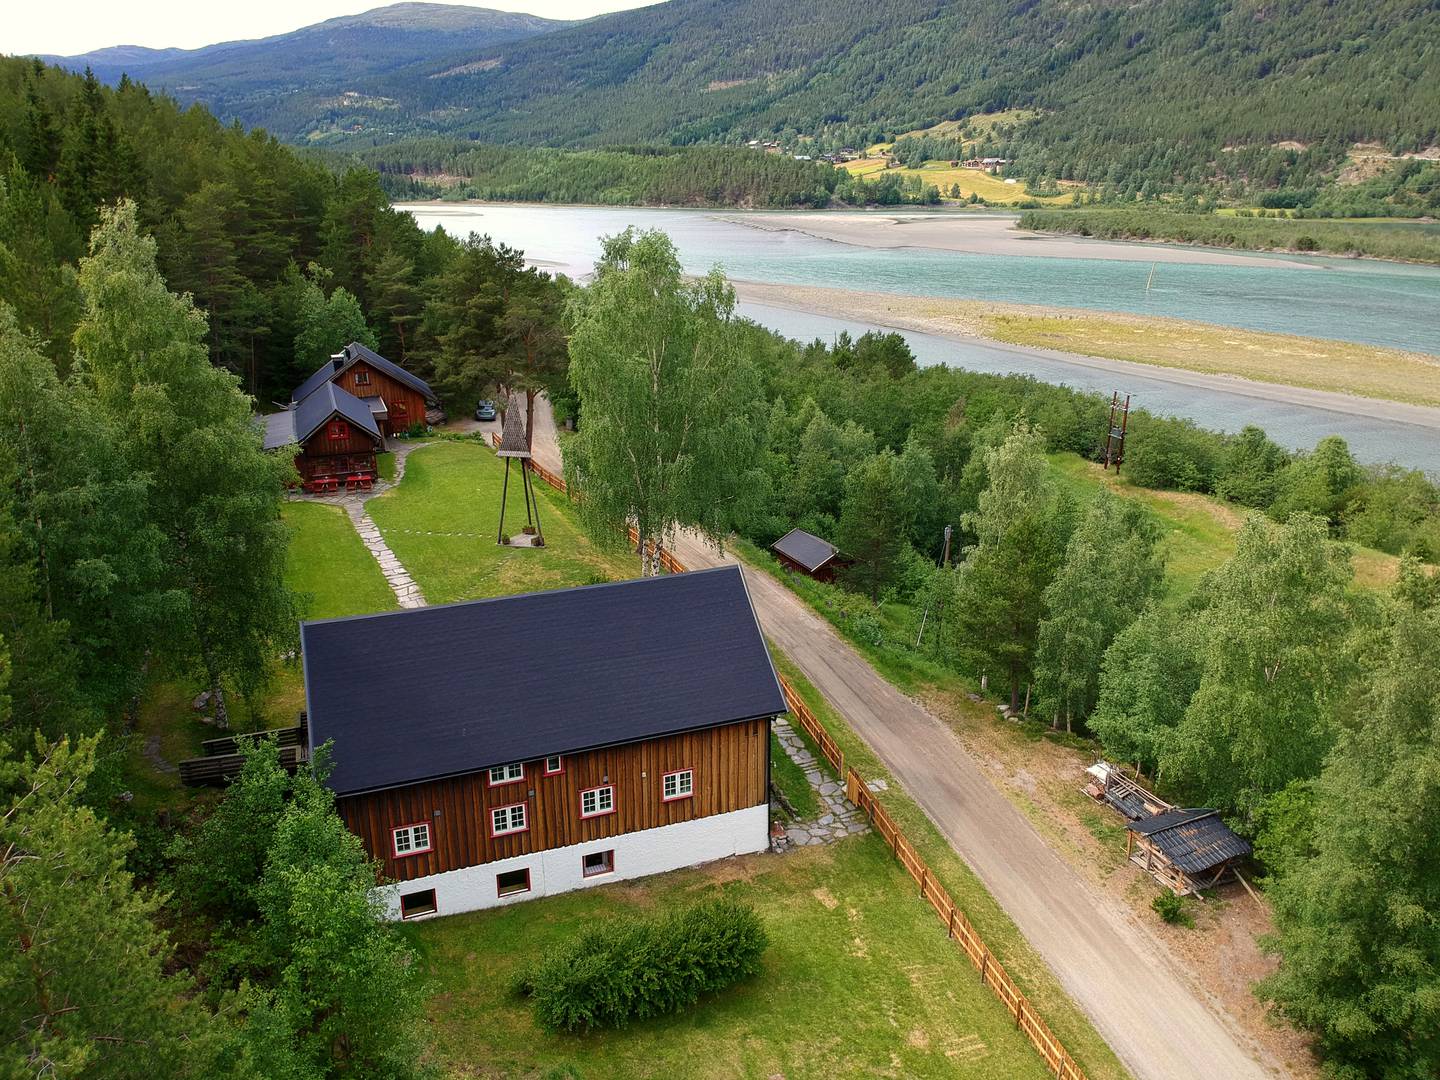 PIONÉR: Sandom Retreatsenter er Norges første tverrkirkelige retreatgård. Den første retreaten ble holdt i 1955, og stedet tilbyr fremdeles en mulighet til å trekke seg tilbake til stillhet og meditasjon. Foto: Sandom